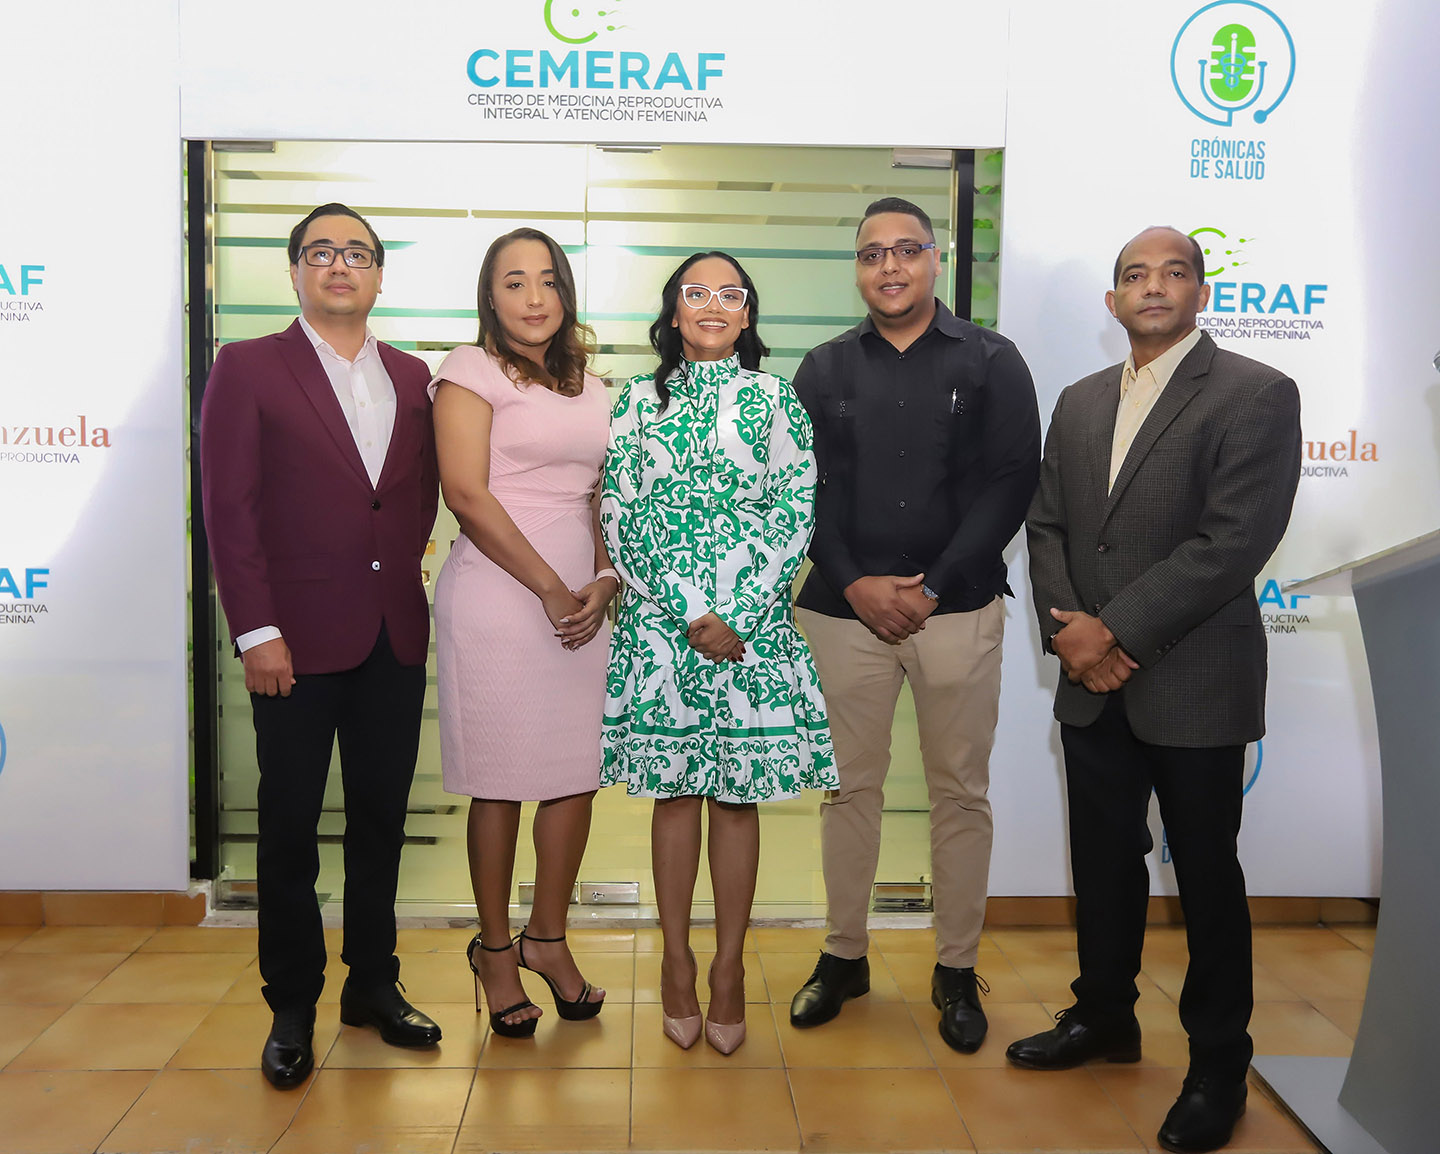 Aperturan las nuevas instalaciones del Centro de Medicina Reproductiva Integral y Acción Femenina, CEMERAF